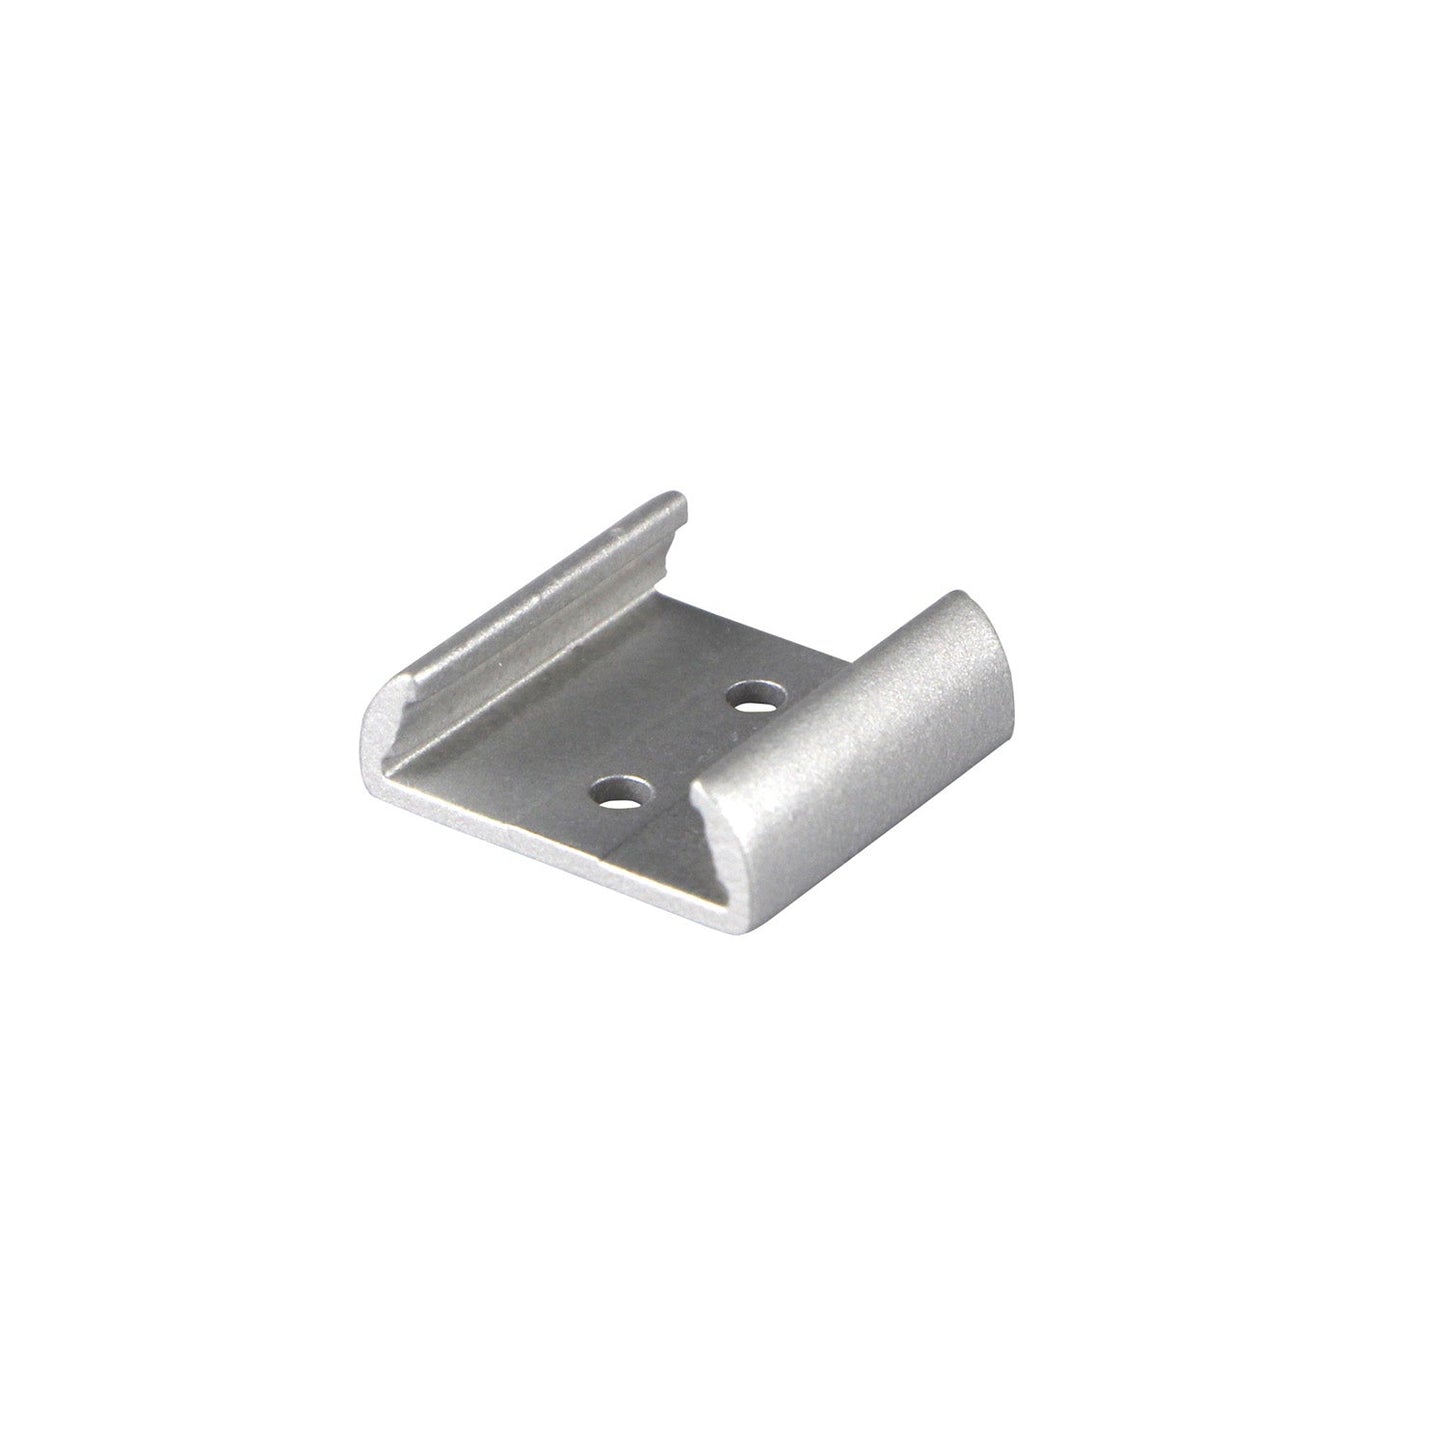 Hv9693-1806 - Shallow Square Bendable Aluminium Profile